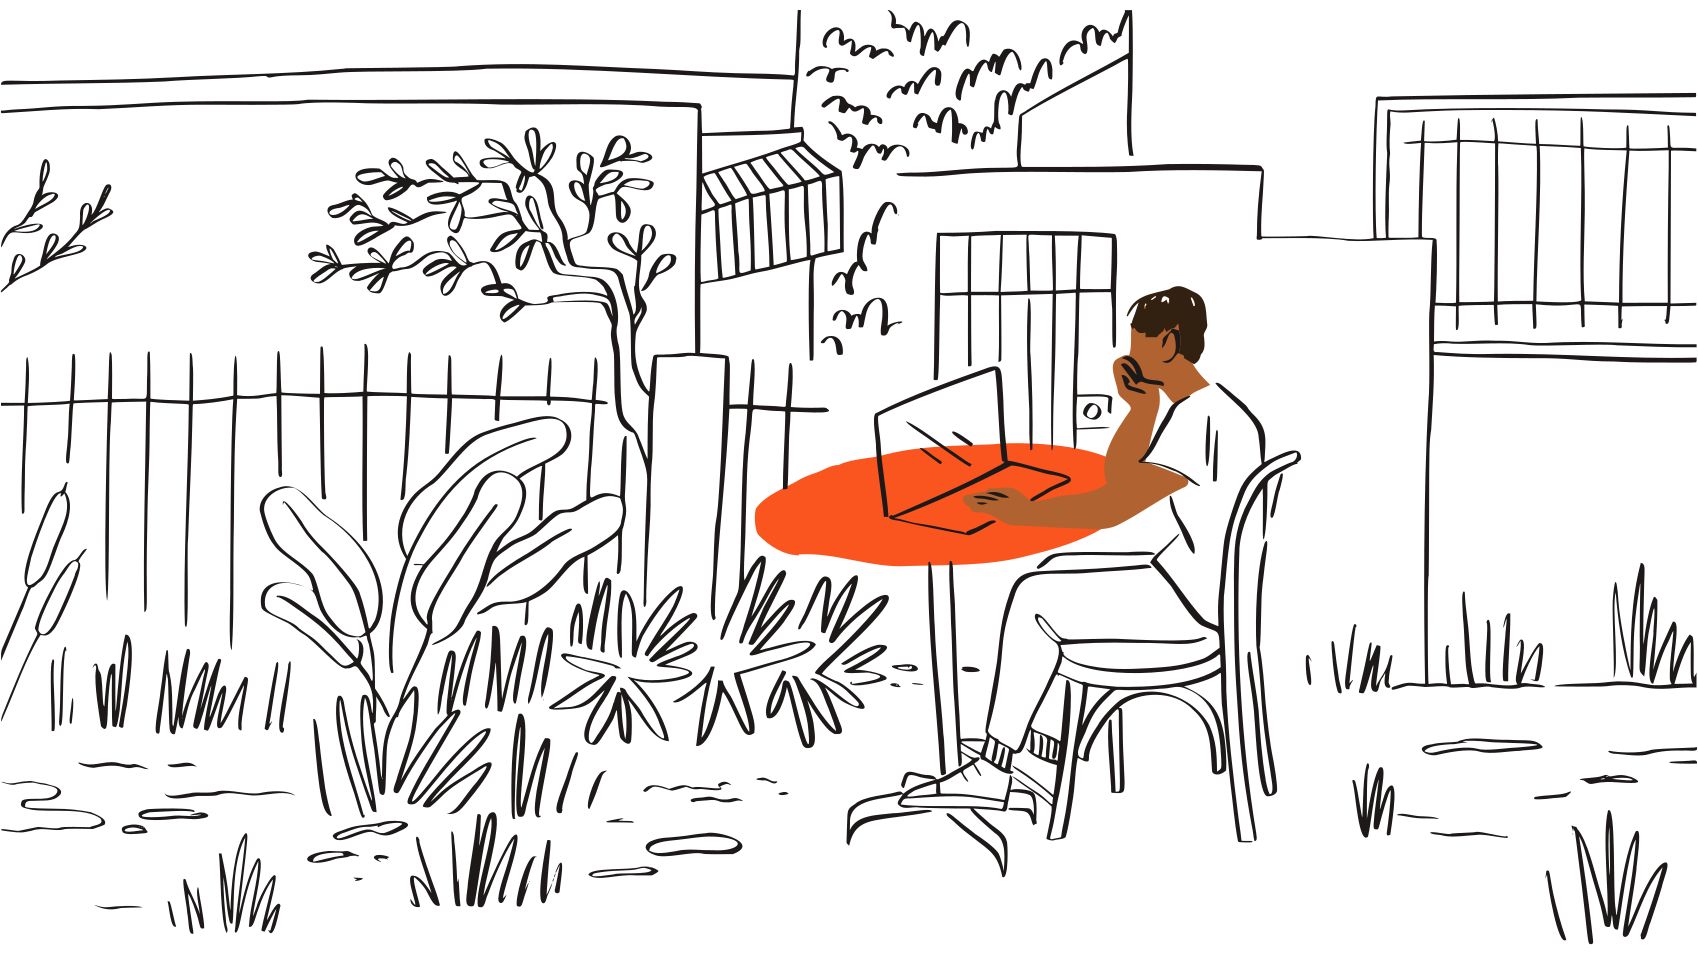 Una ilustración de una persona sentada afuera en una mesa naranja, mirando una computadora portátil